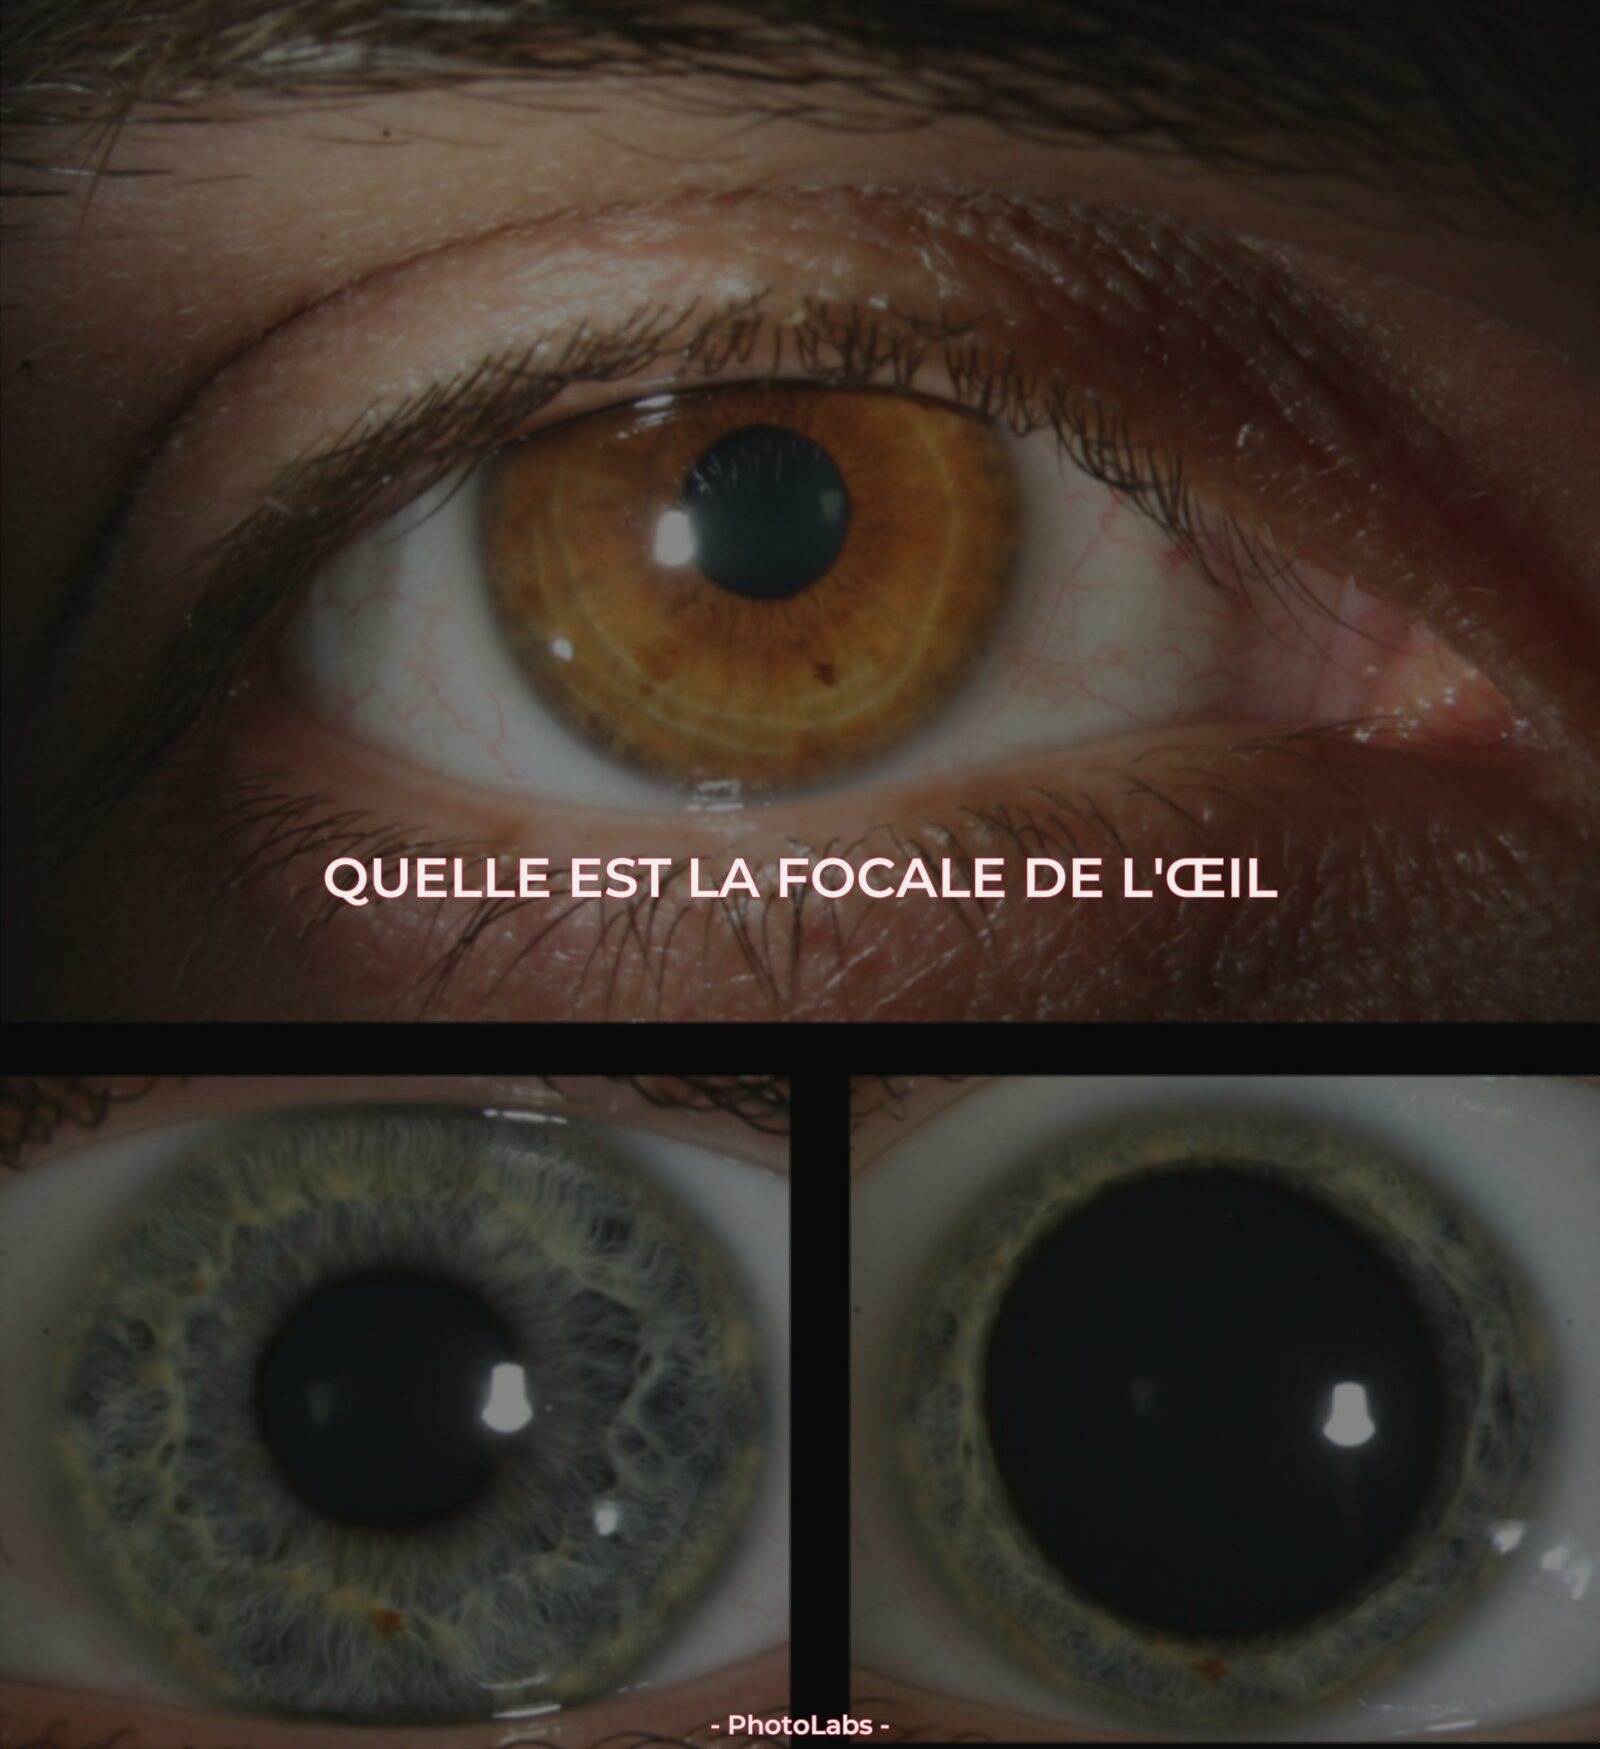 Quelle est la focale de l'œil ?